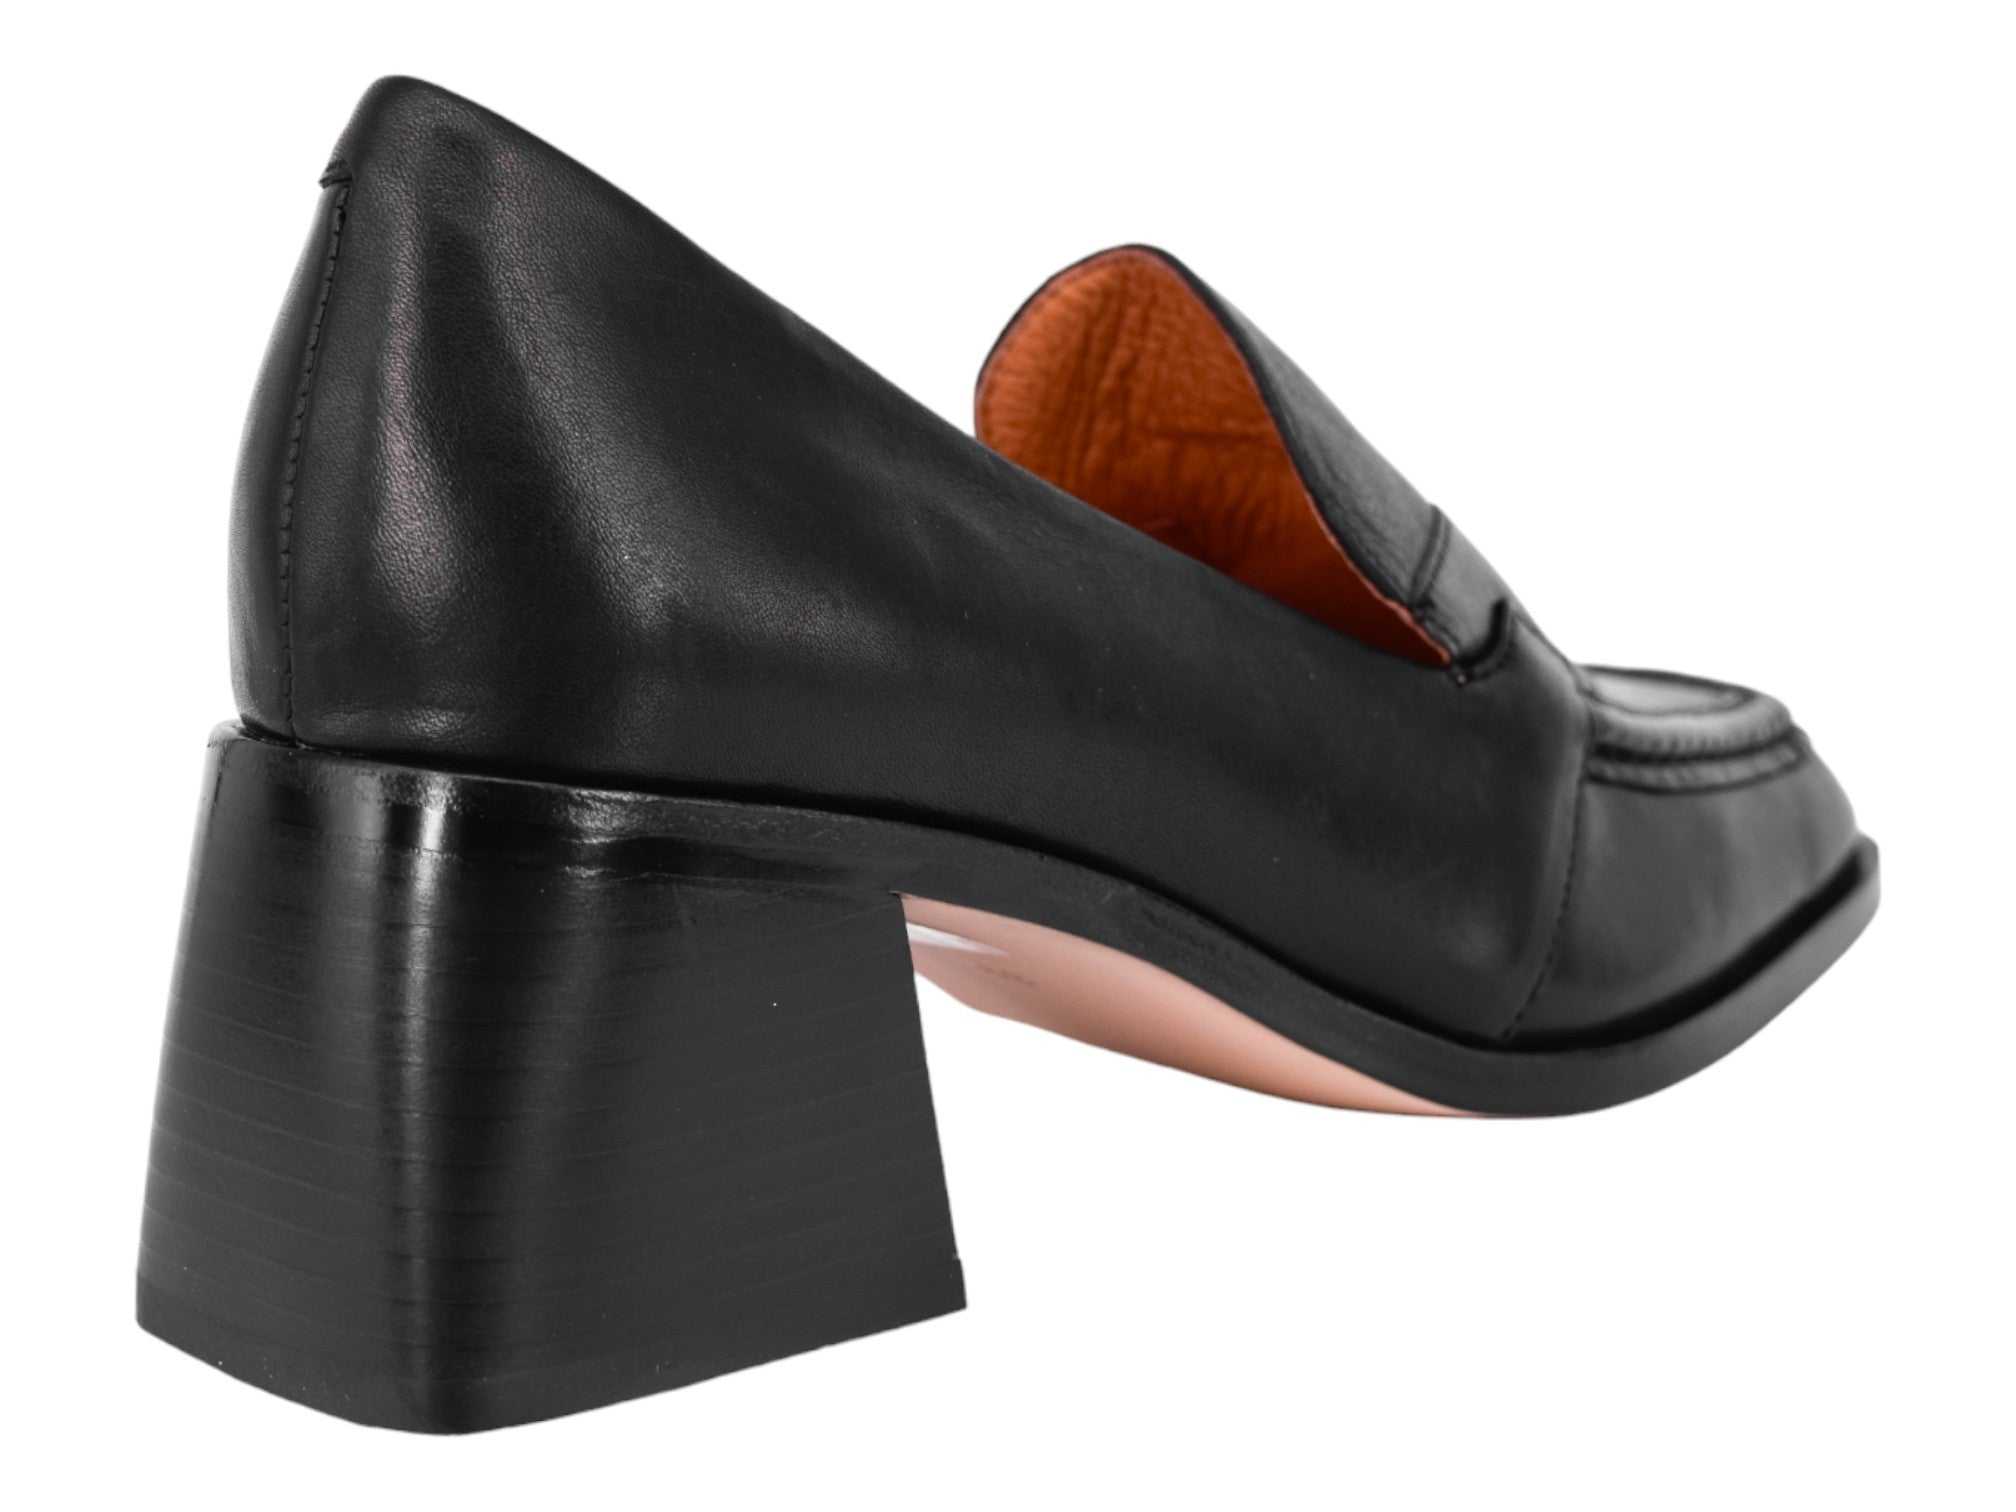 Belle Scarpe Rhinestone Dress Shoe - Women's